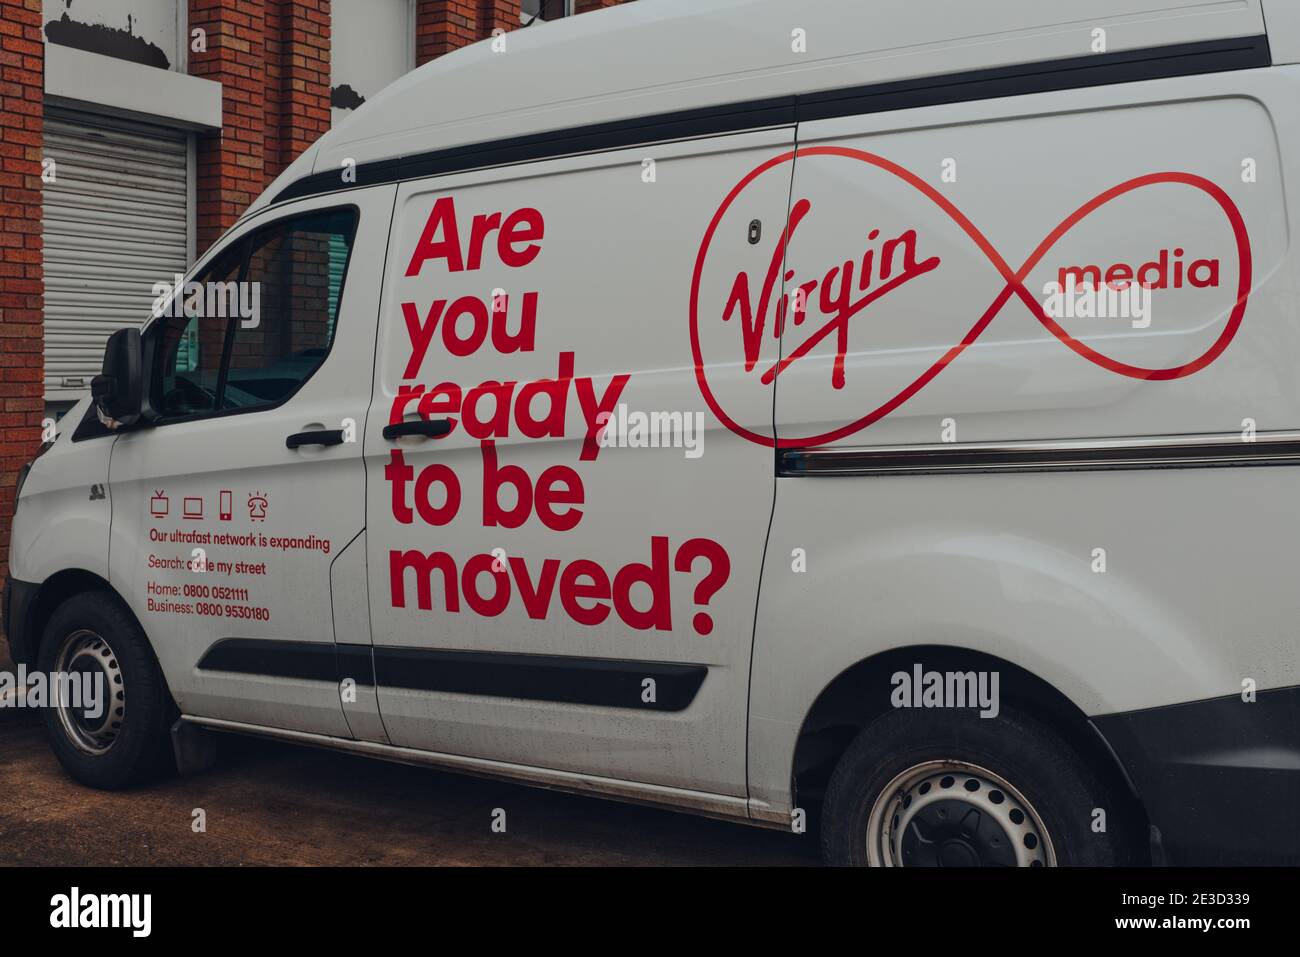 Birmingham, Regno Unito - 17 gennaio 2021: Virgin Media van in una strada a Birmingham, Regno Unito. Virgin Media è una società di telecomunicazioni che fornisce te Foto Stock